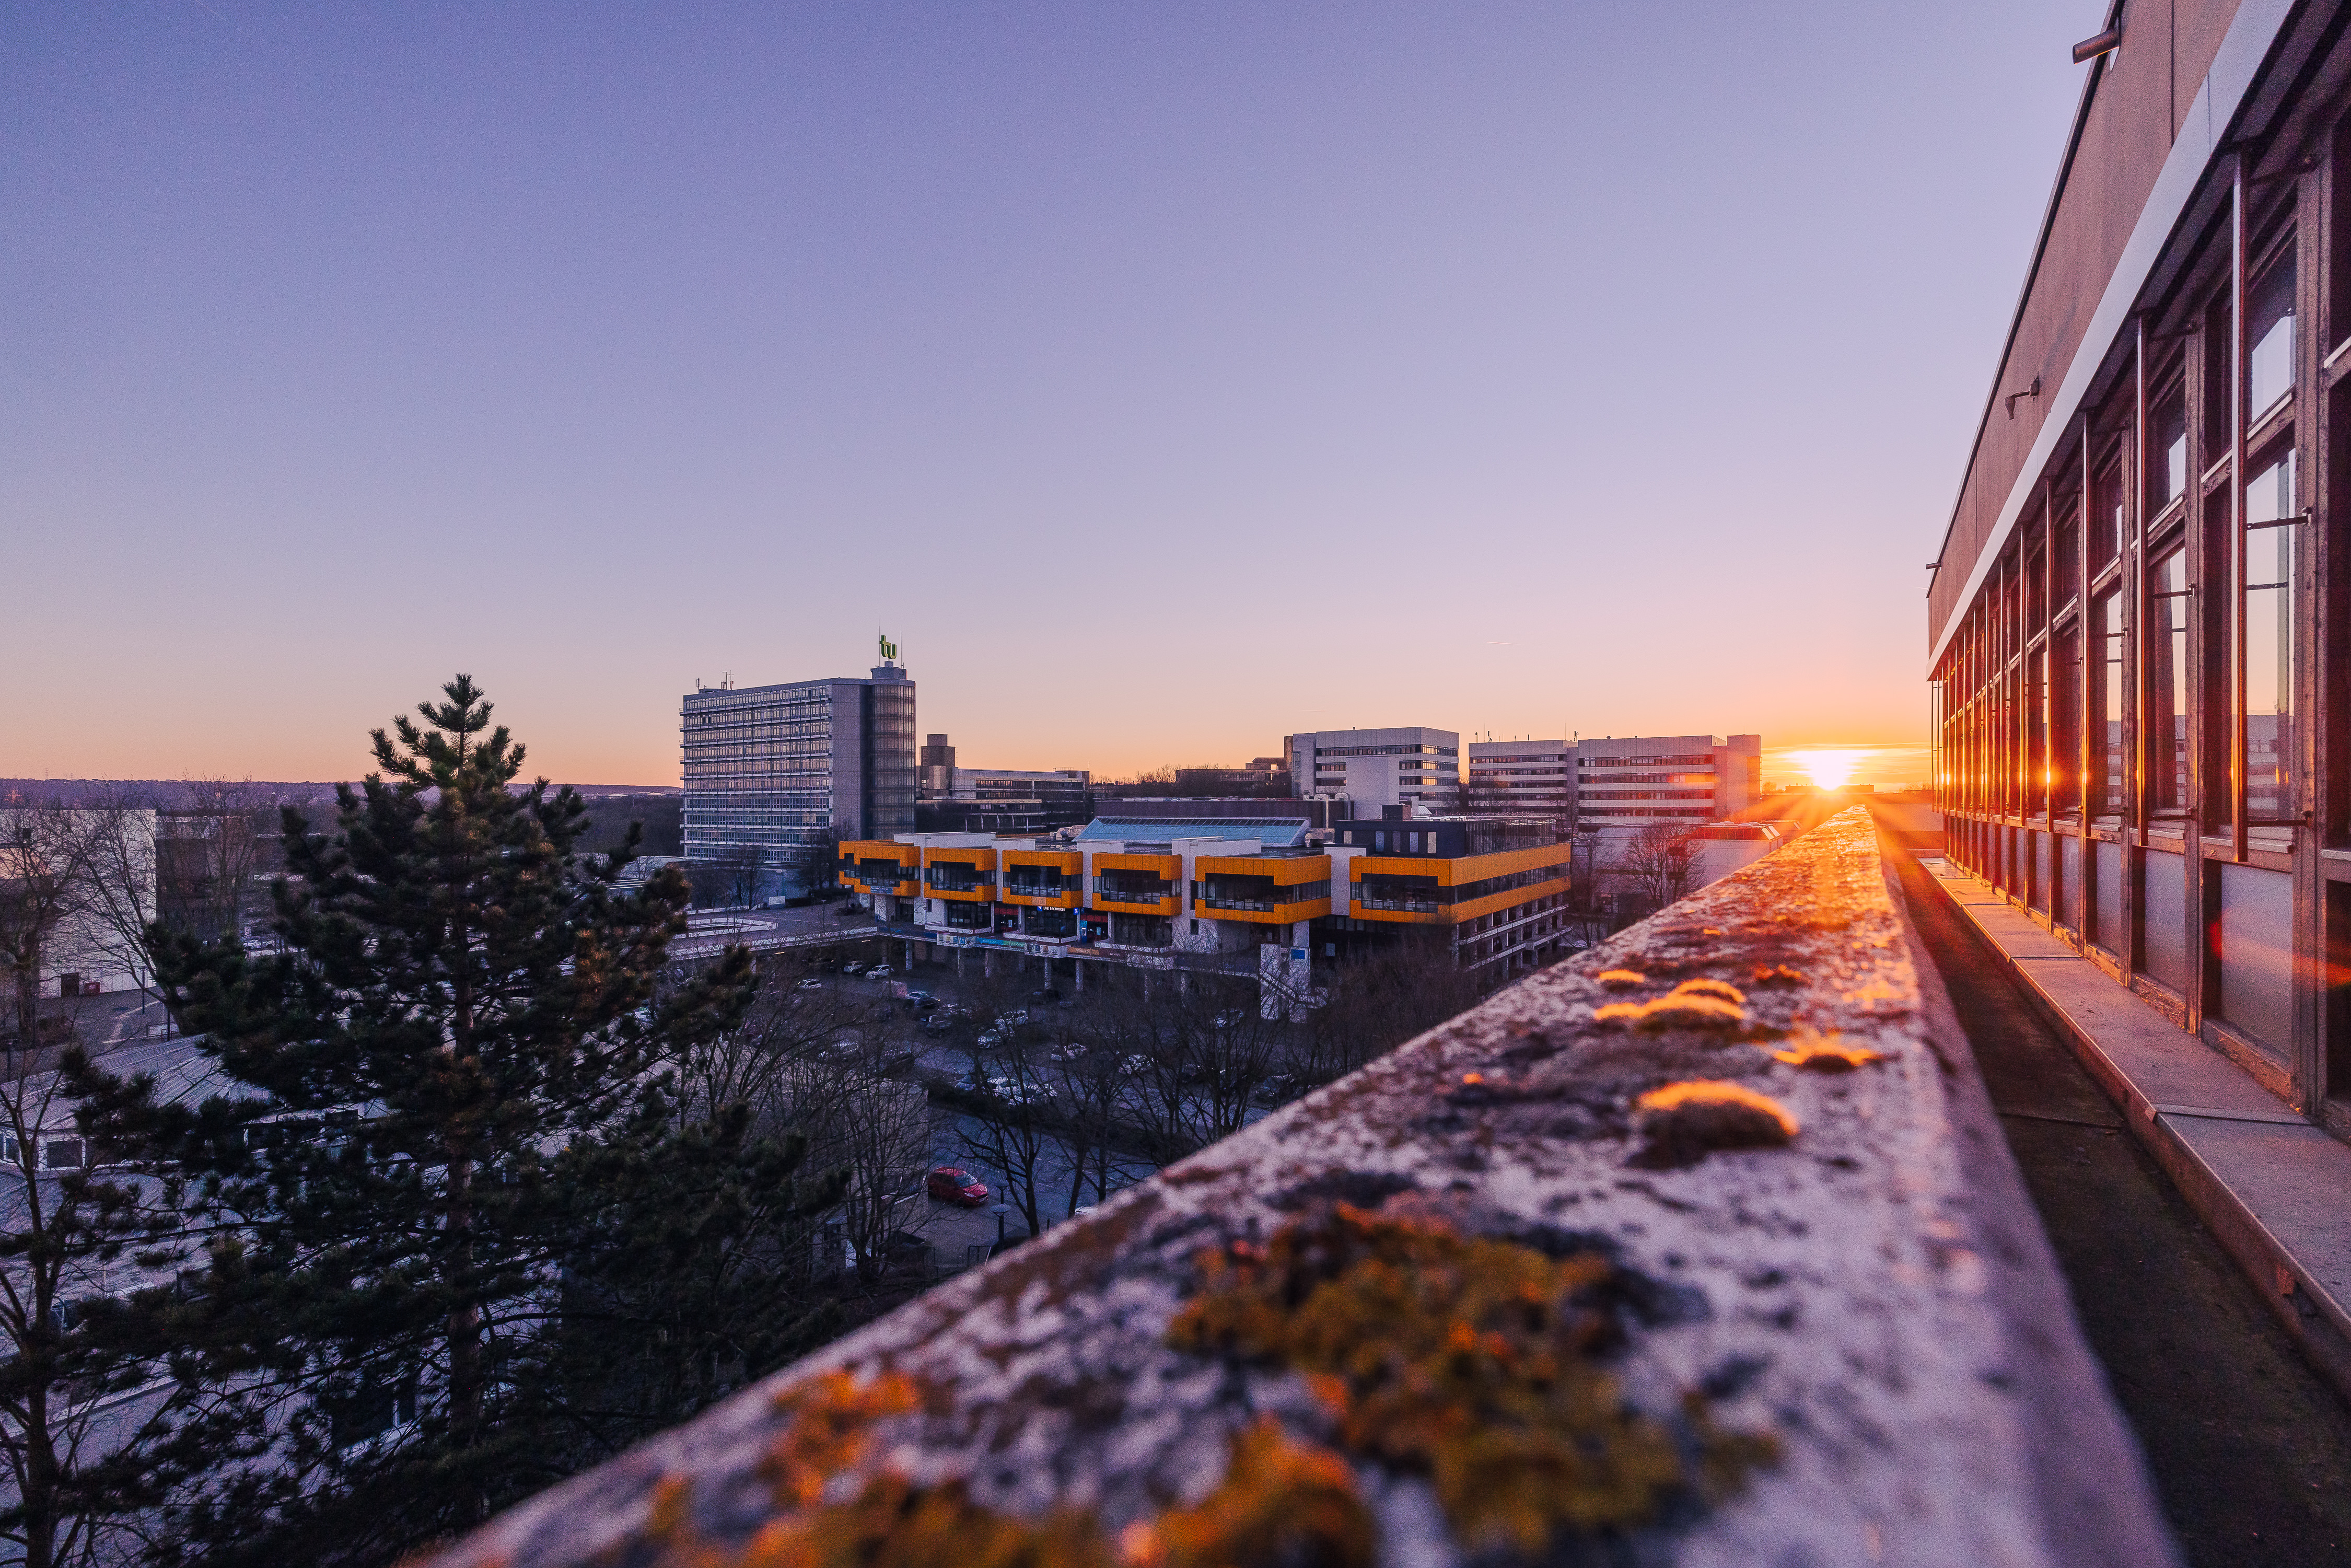 Der vereiste Campus der TU Dortmund mit dem Mathetower und dem Mensagebäude im Hintergrund sind vom eisbedeckten Balkon eines Gebäudes zu sehen. Im Hintergrund geht die Sonne unter.